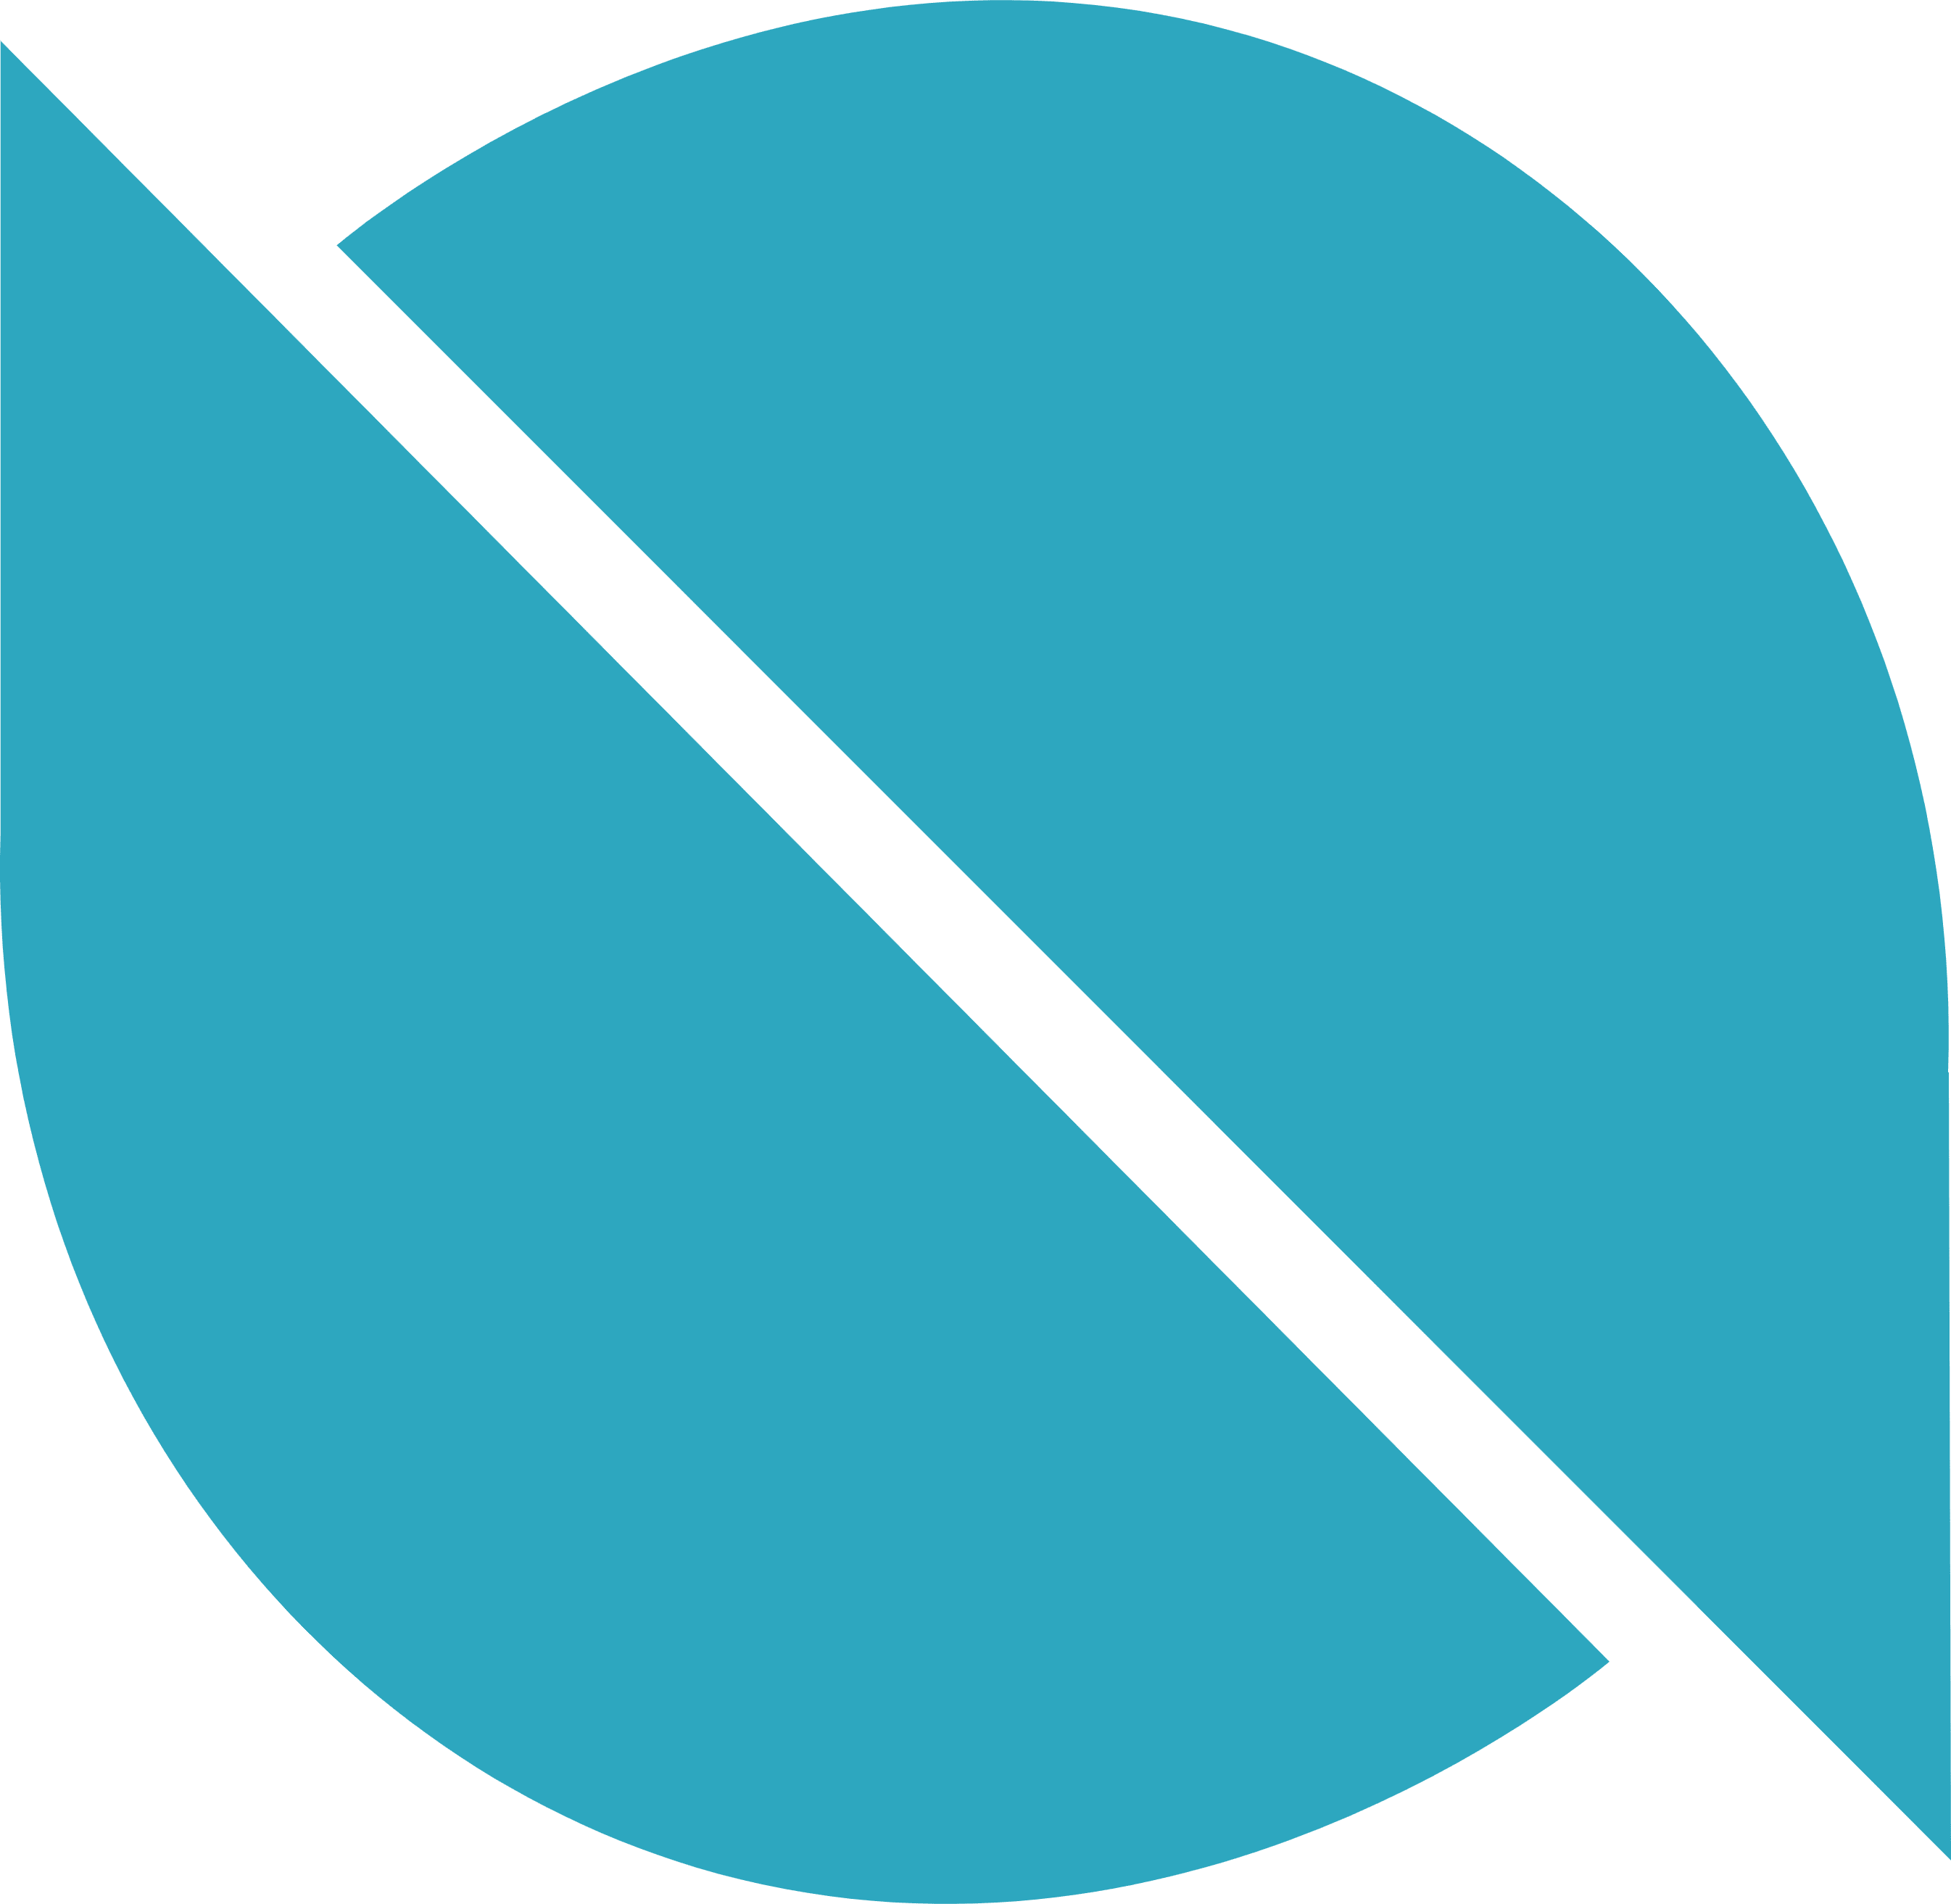 Ontology logo in svg format